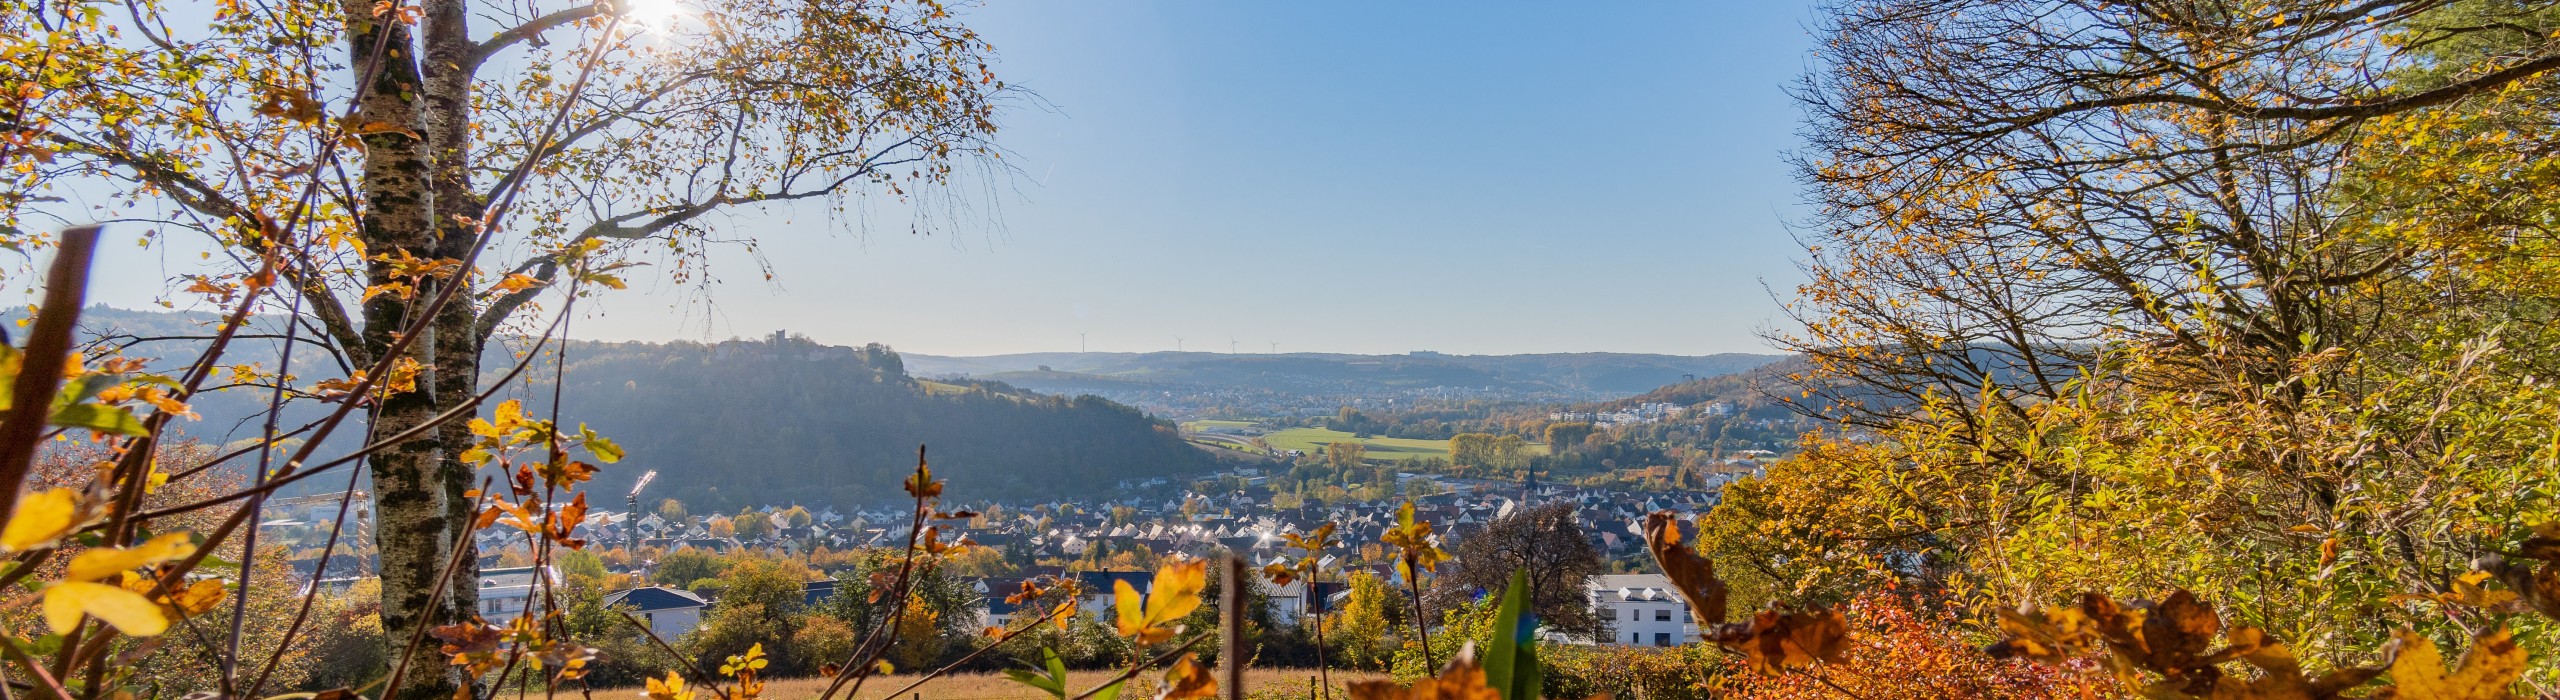 Landschaftsaufnahme Igersheim im Hintergrund, Bäume und Hecken im Vordergrund